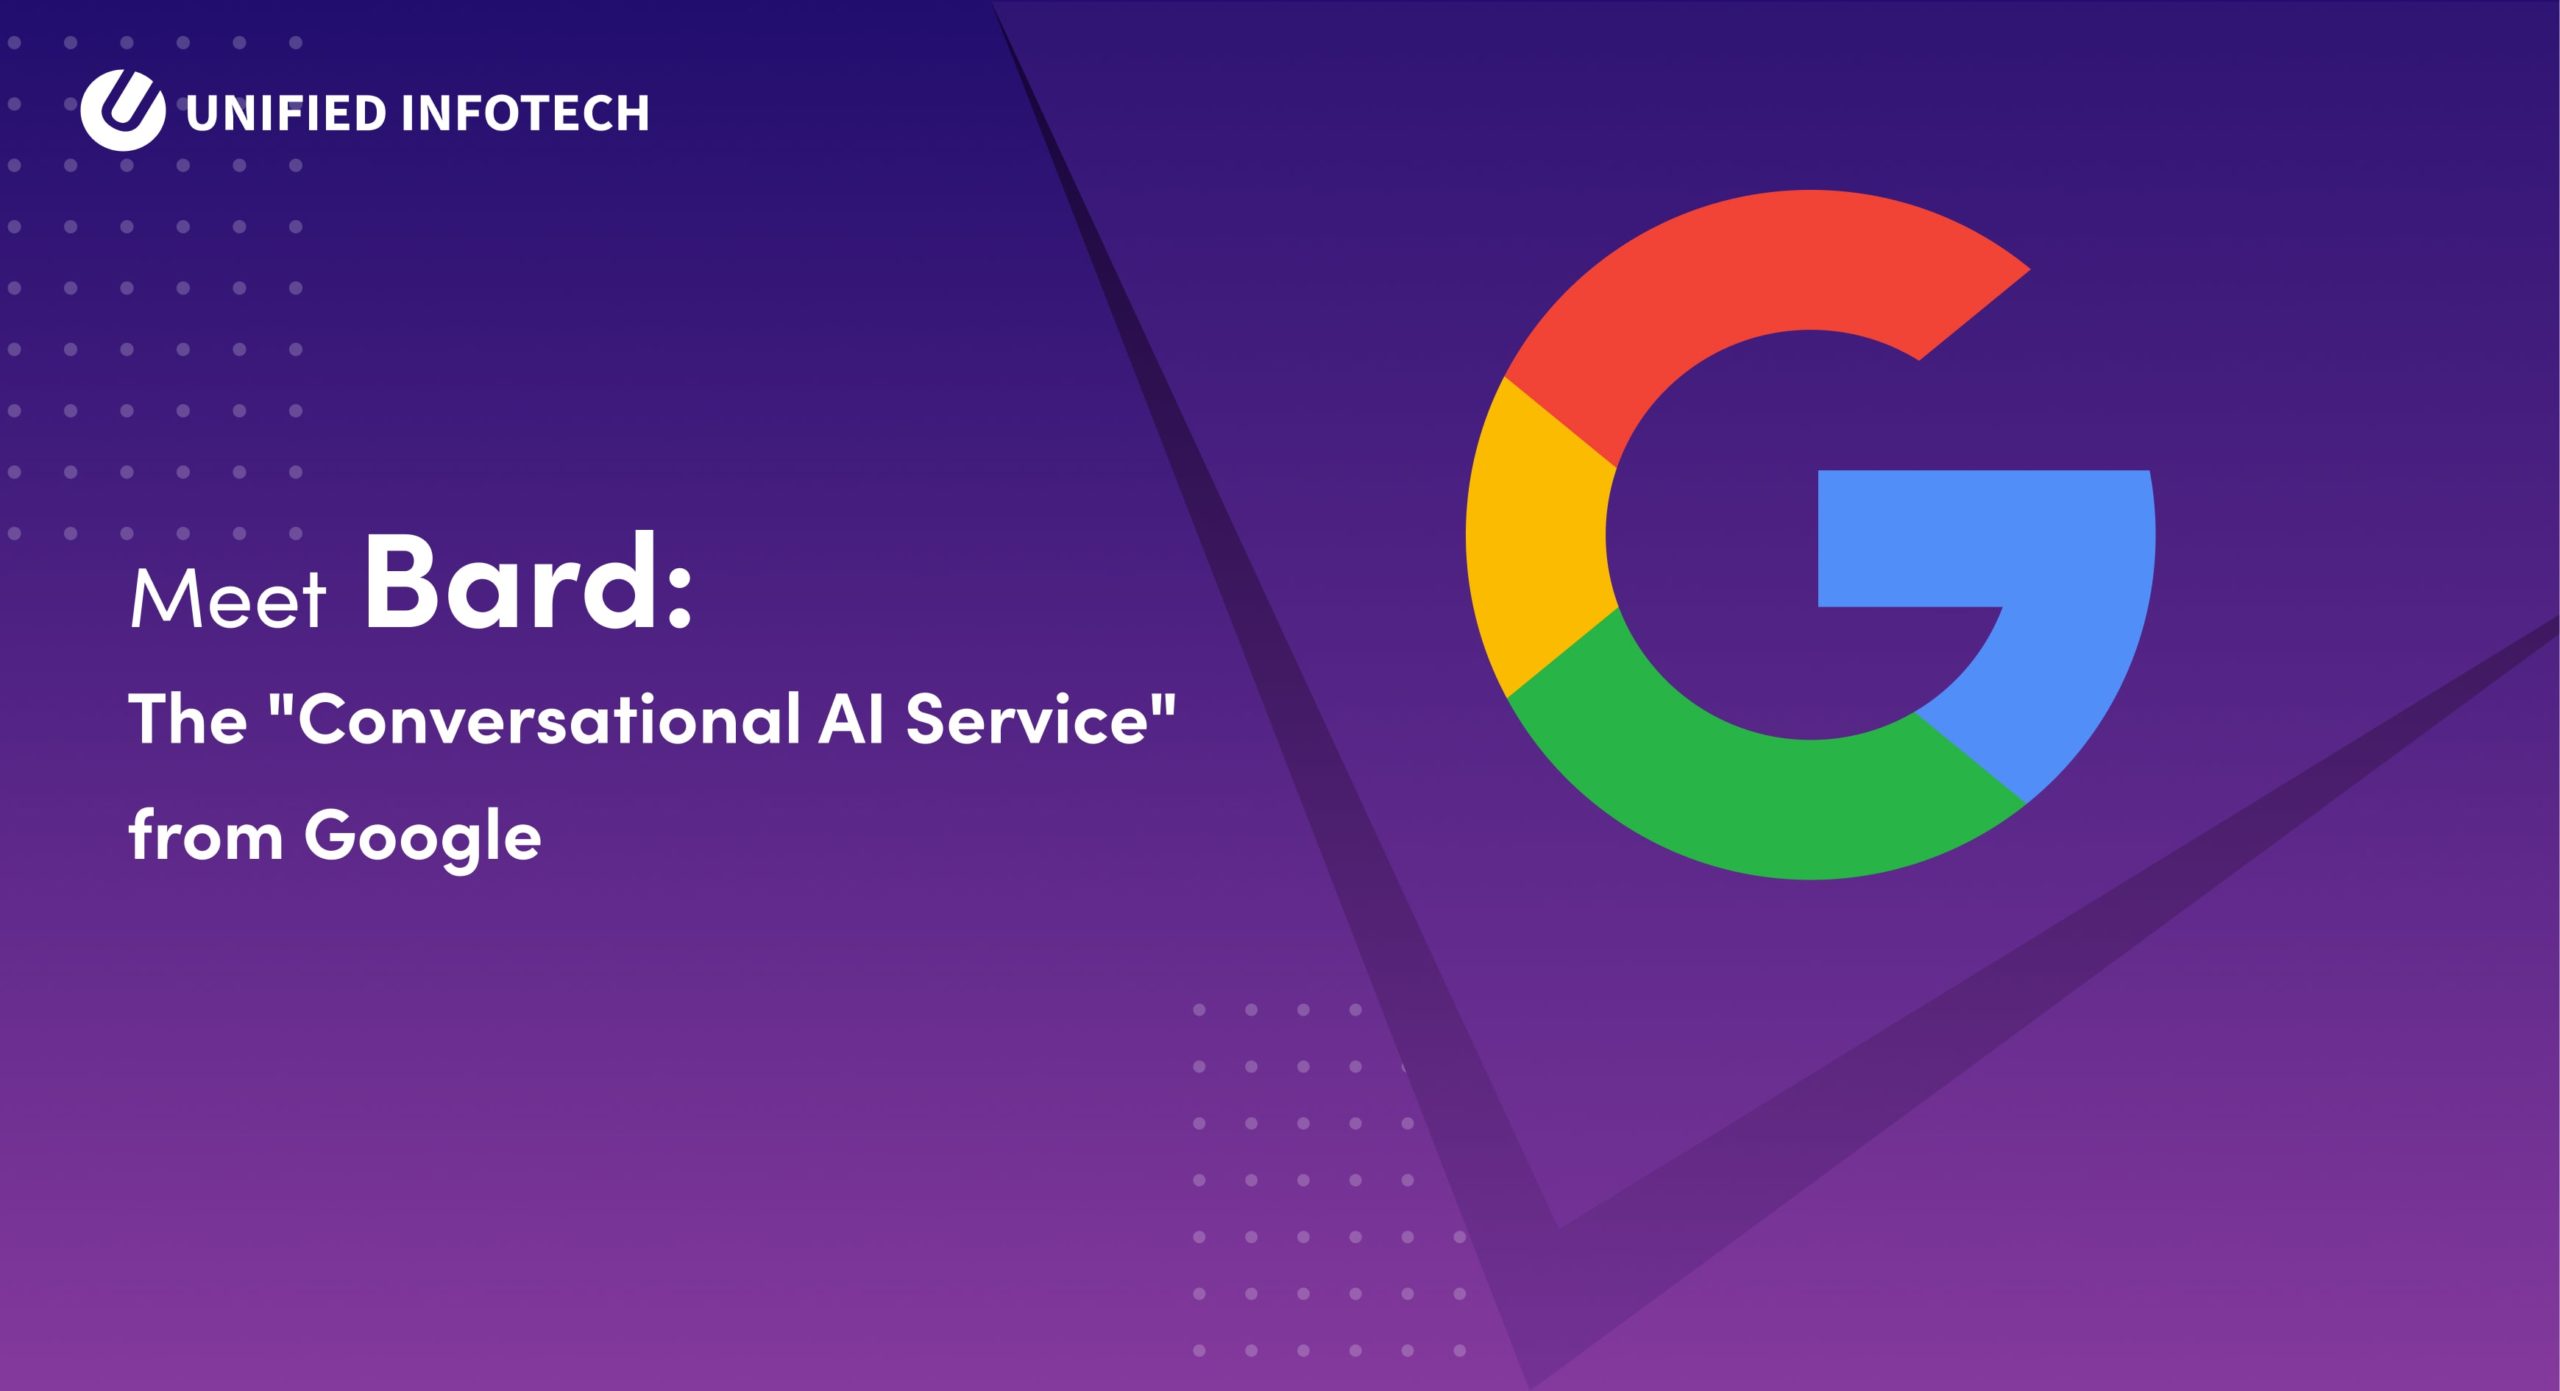 Meet Bard: The “Conversational AI Service” from Google